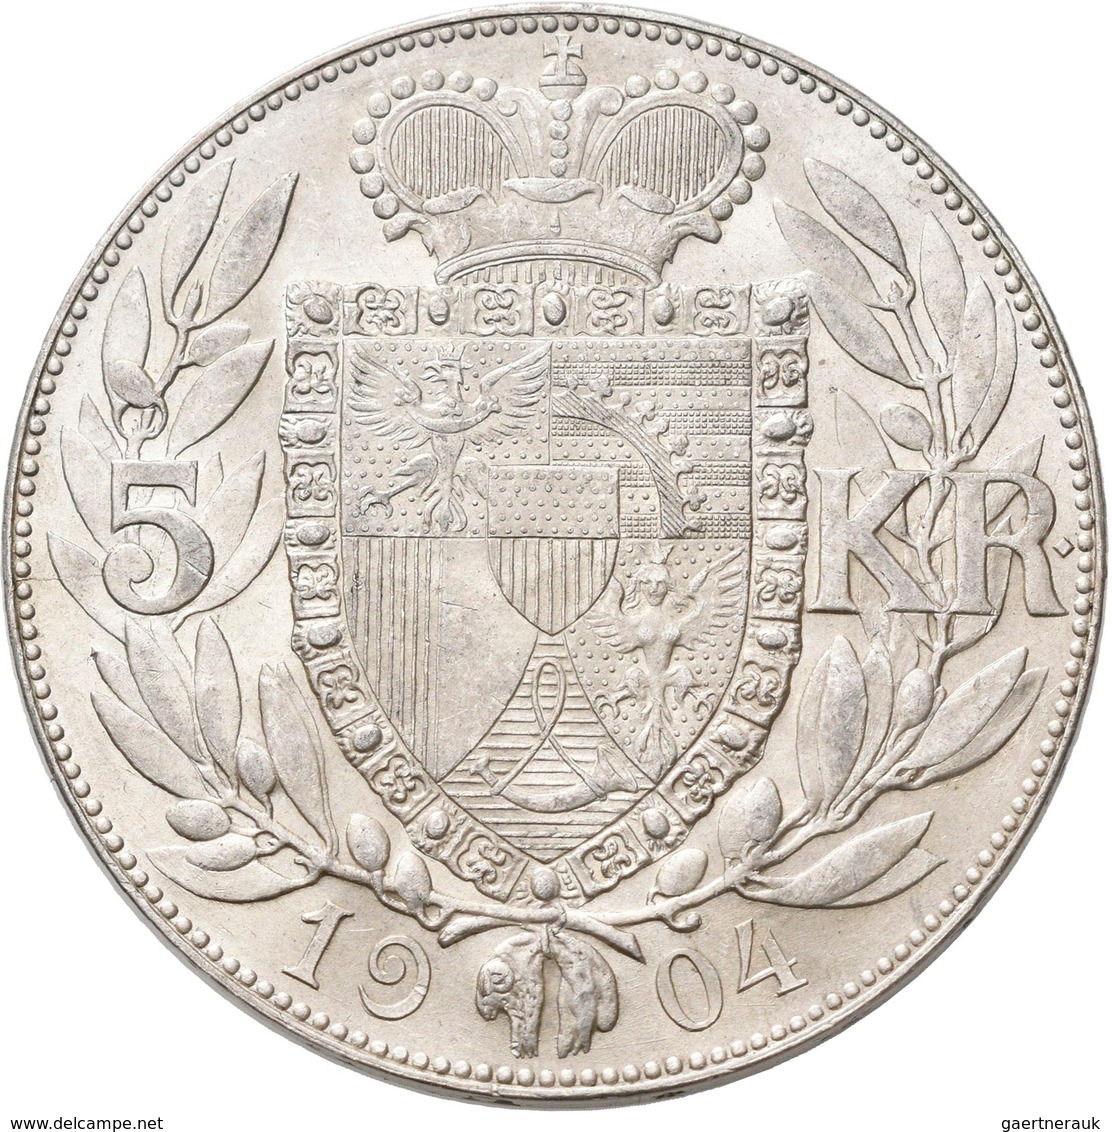 Liechtenstein: Johann II. 1858-1929: 5 Kronen 1904, HMZ 2-1376c, Vorzüglich - Stempelglanz. - Liechtenstein